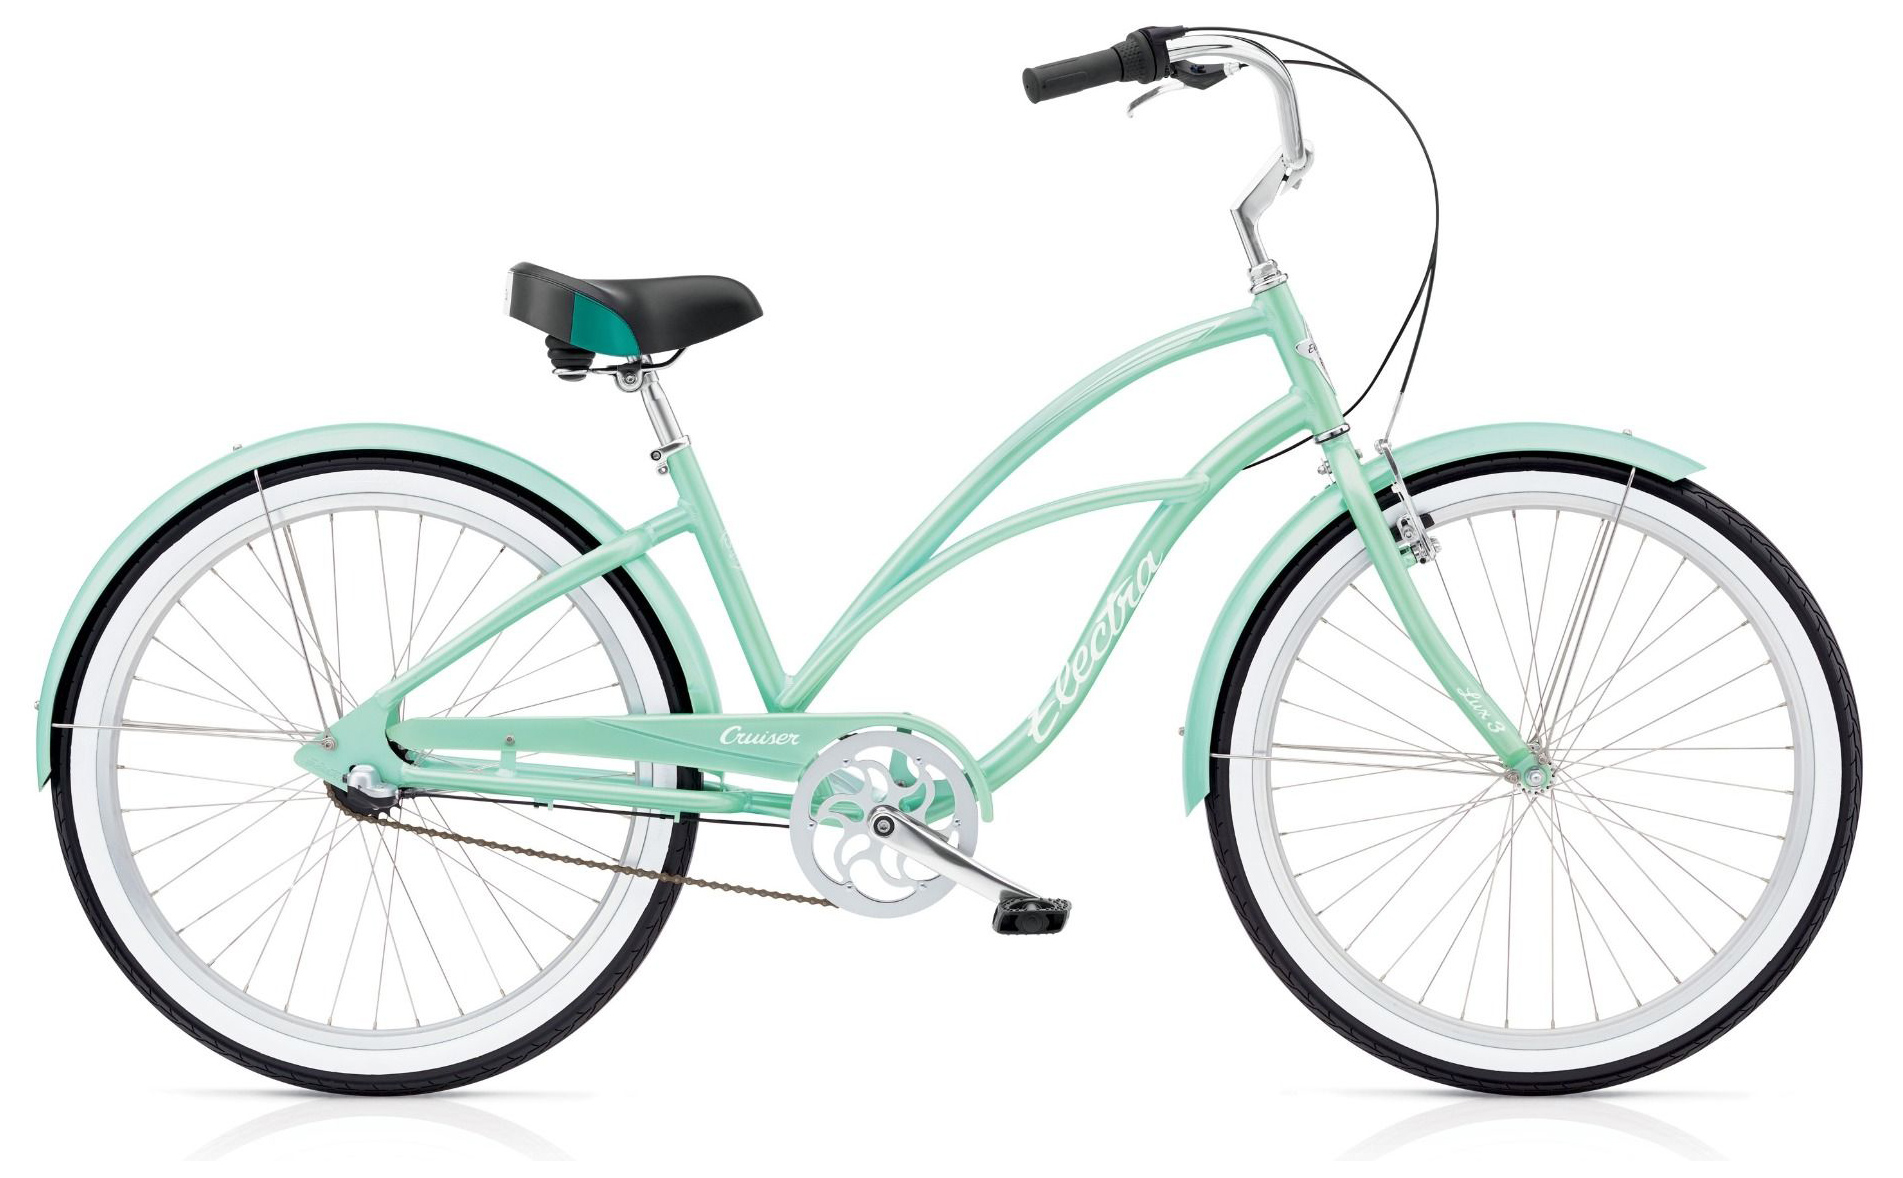  Отзывы о Женском велосипеде Electra Cruiser Lux 3i 2019